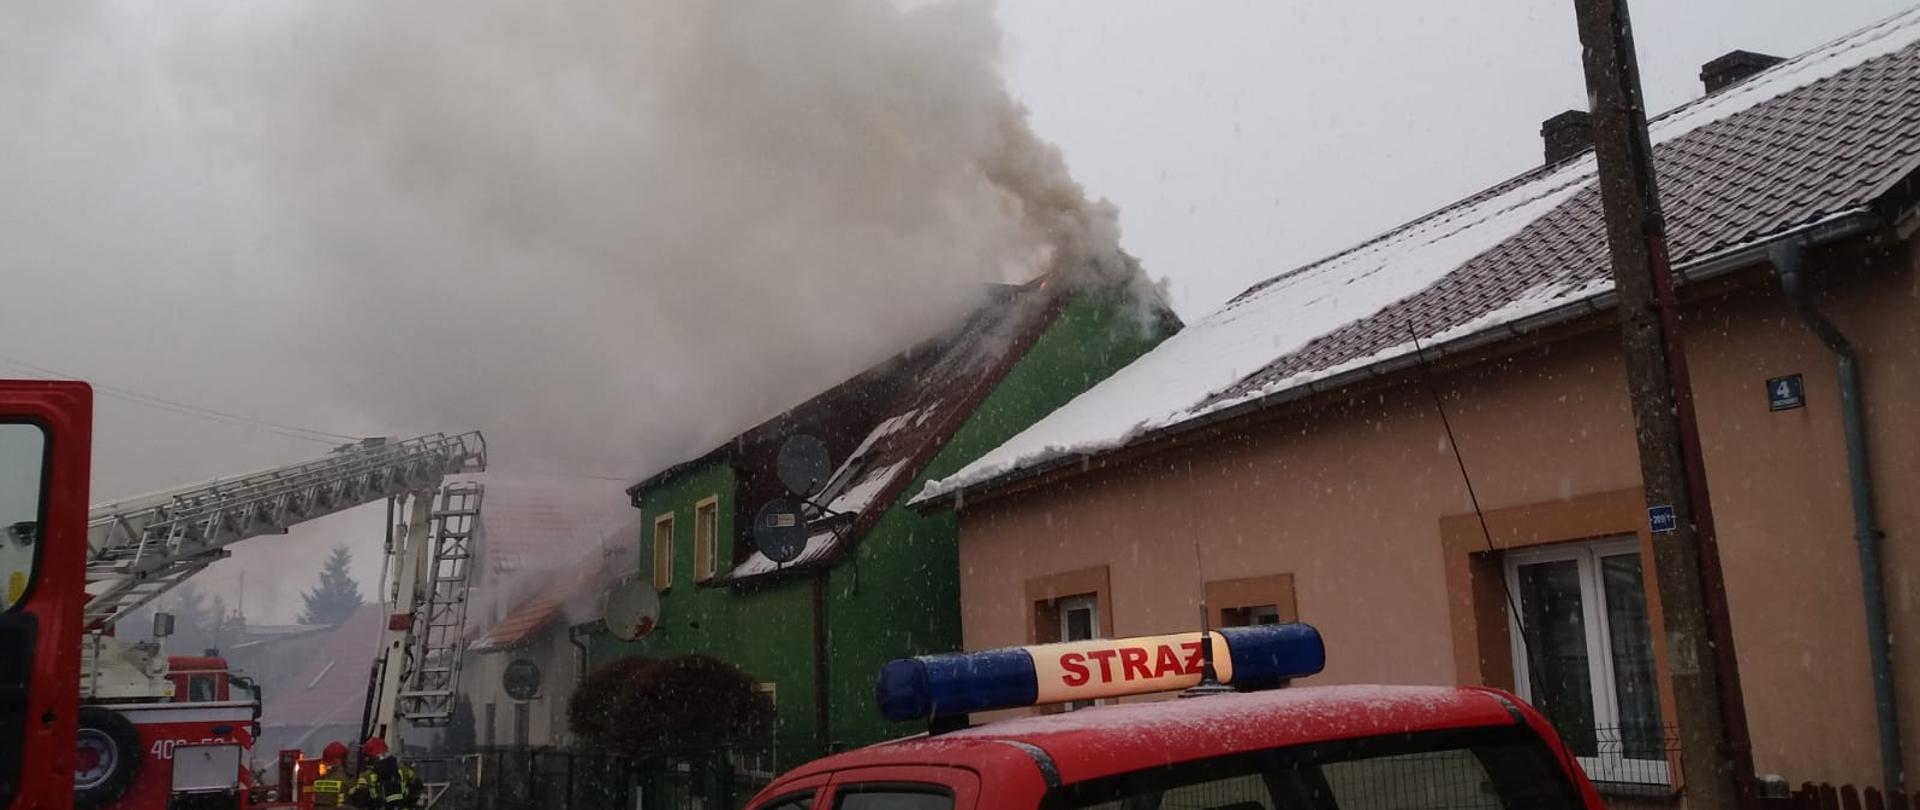 Zdjęcie przedstawia pożar dachu budynku mieszkalnego. Z dachu wydobywa się dym. Po lewej stronie zdjęcia widać samochód pożarniczy koloru czerwonego oraz pracujących na miejscu ratowników.